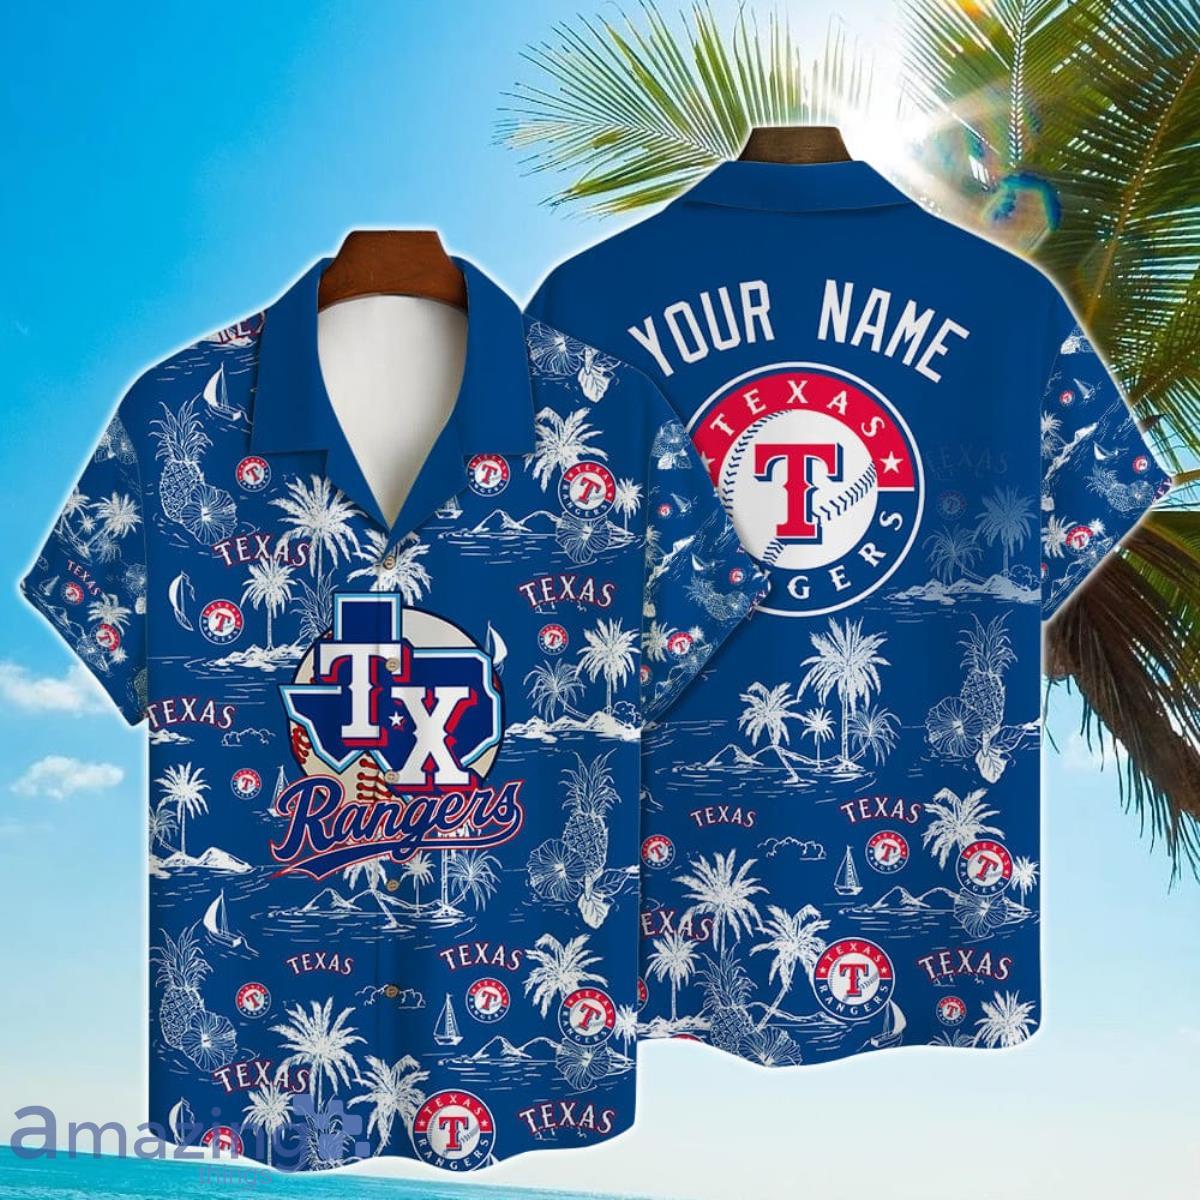 Vintage Baseball Texas Rangers Shirt Size XL 